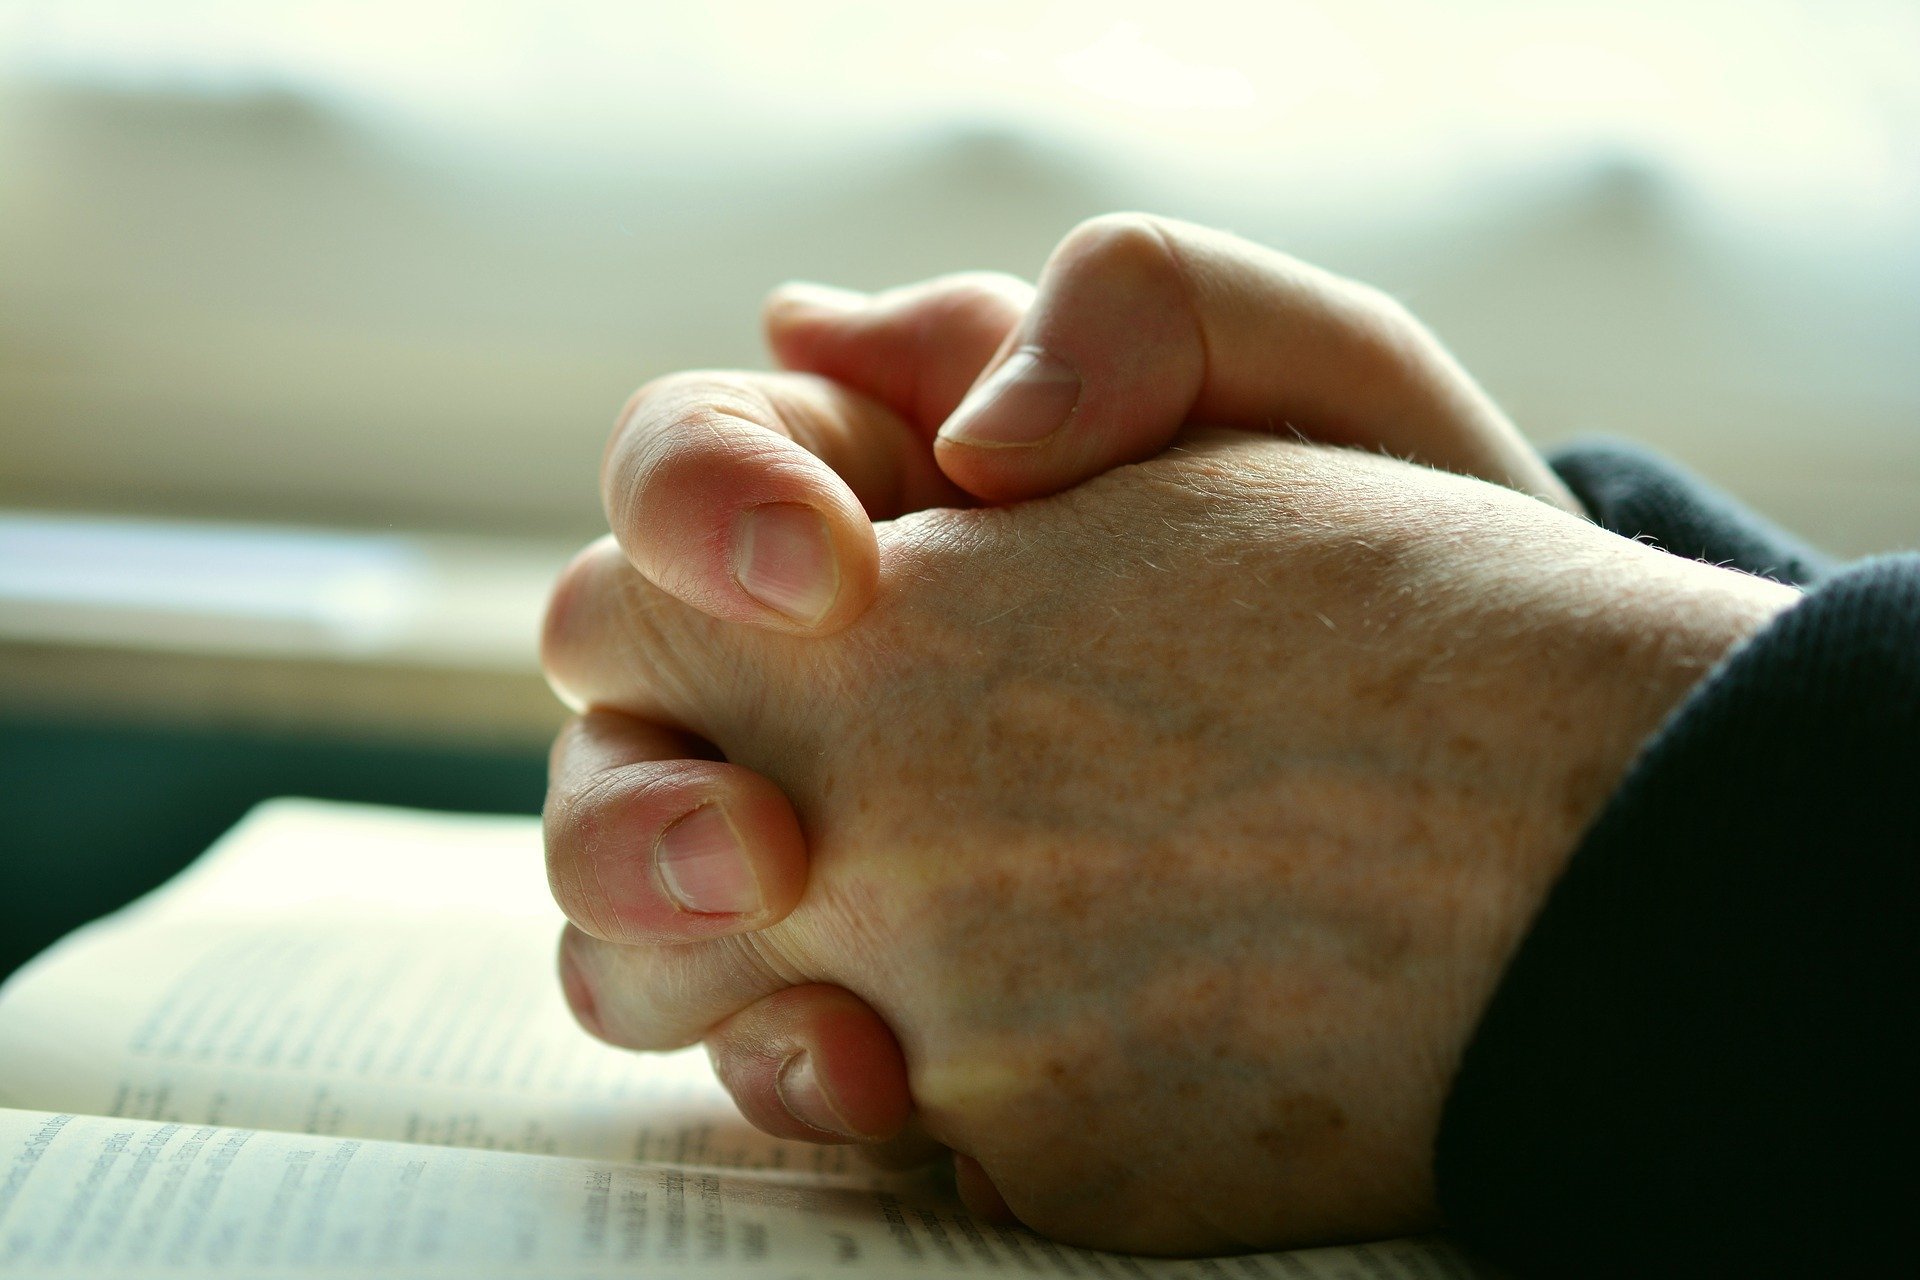 Mãos de pessoa unidas colocadas em cima da bíblia em sinal de oração